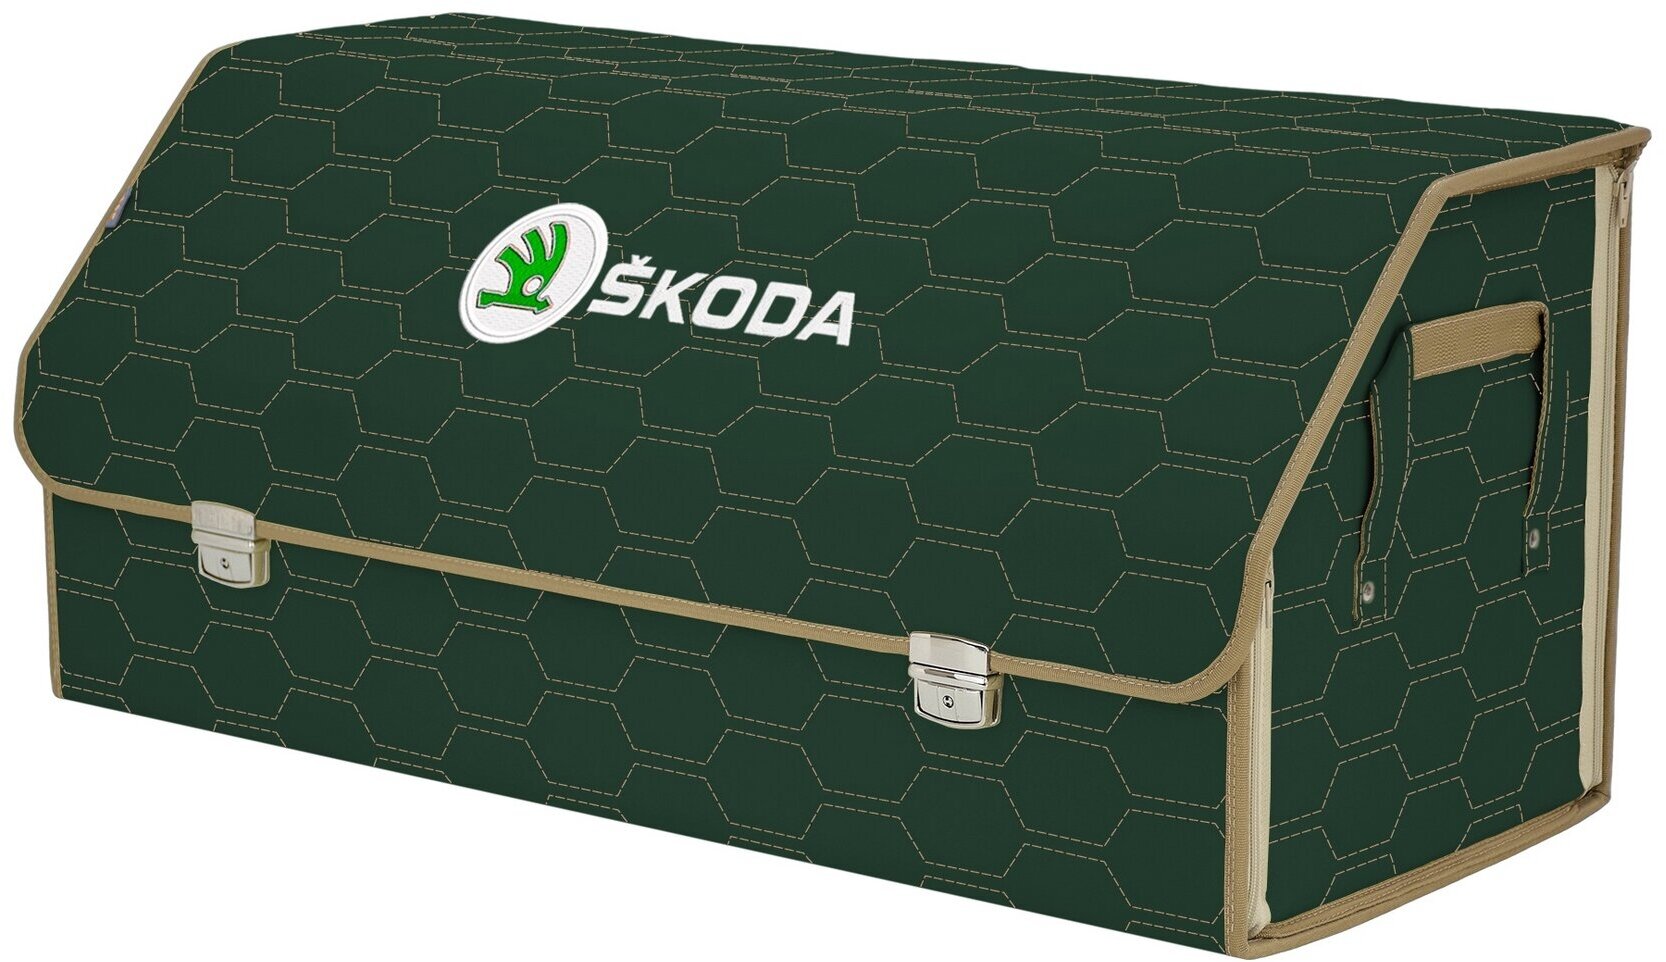 Органайзер-саквояж в багажник "Союз Премиум" (размер XXL). Цвет: зеленый с бежевой прострочкой Соты и вышивкой Skoda (Шкода).